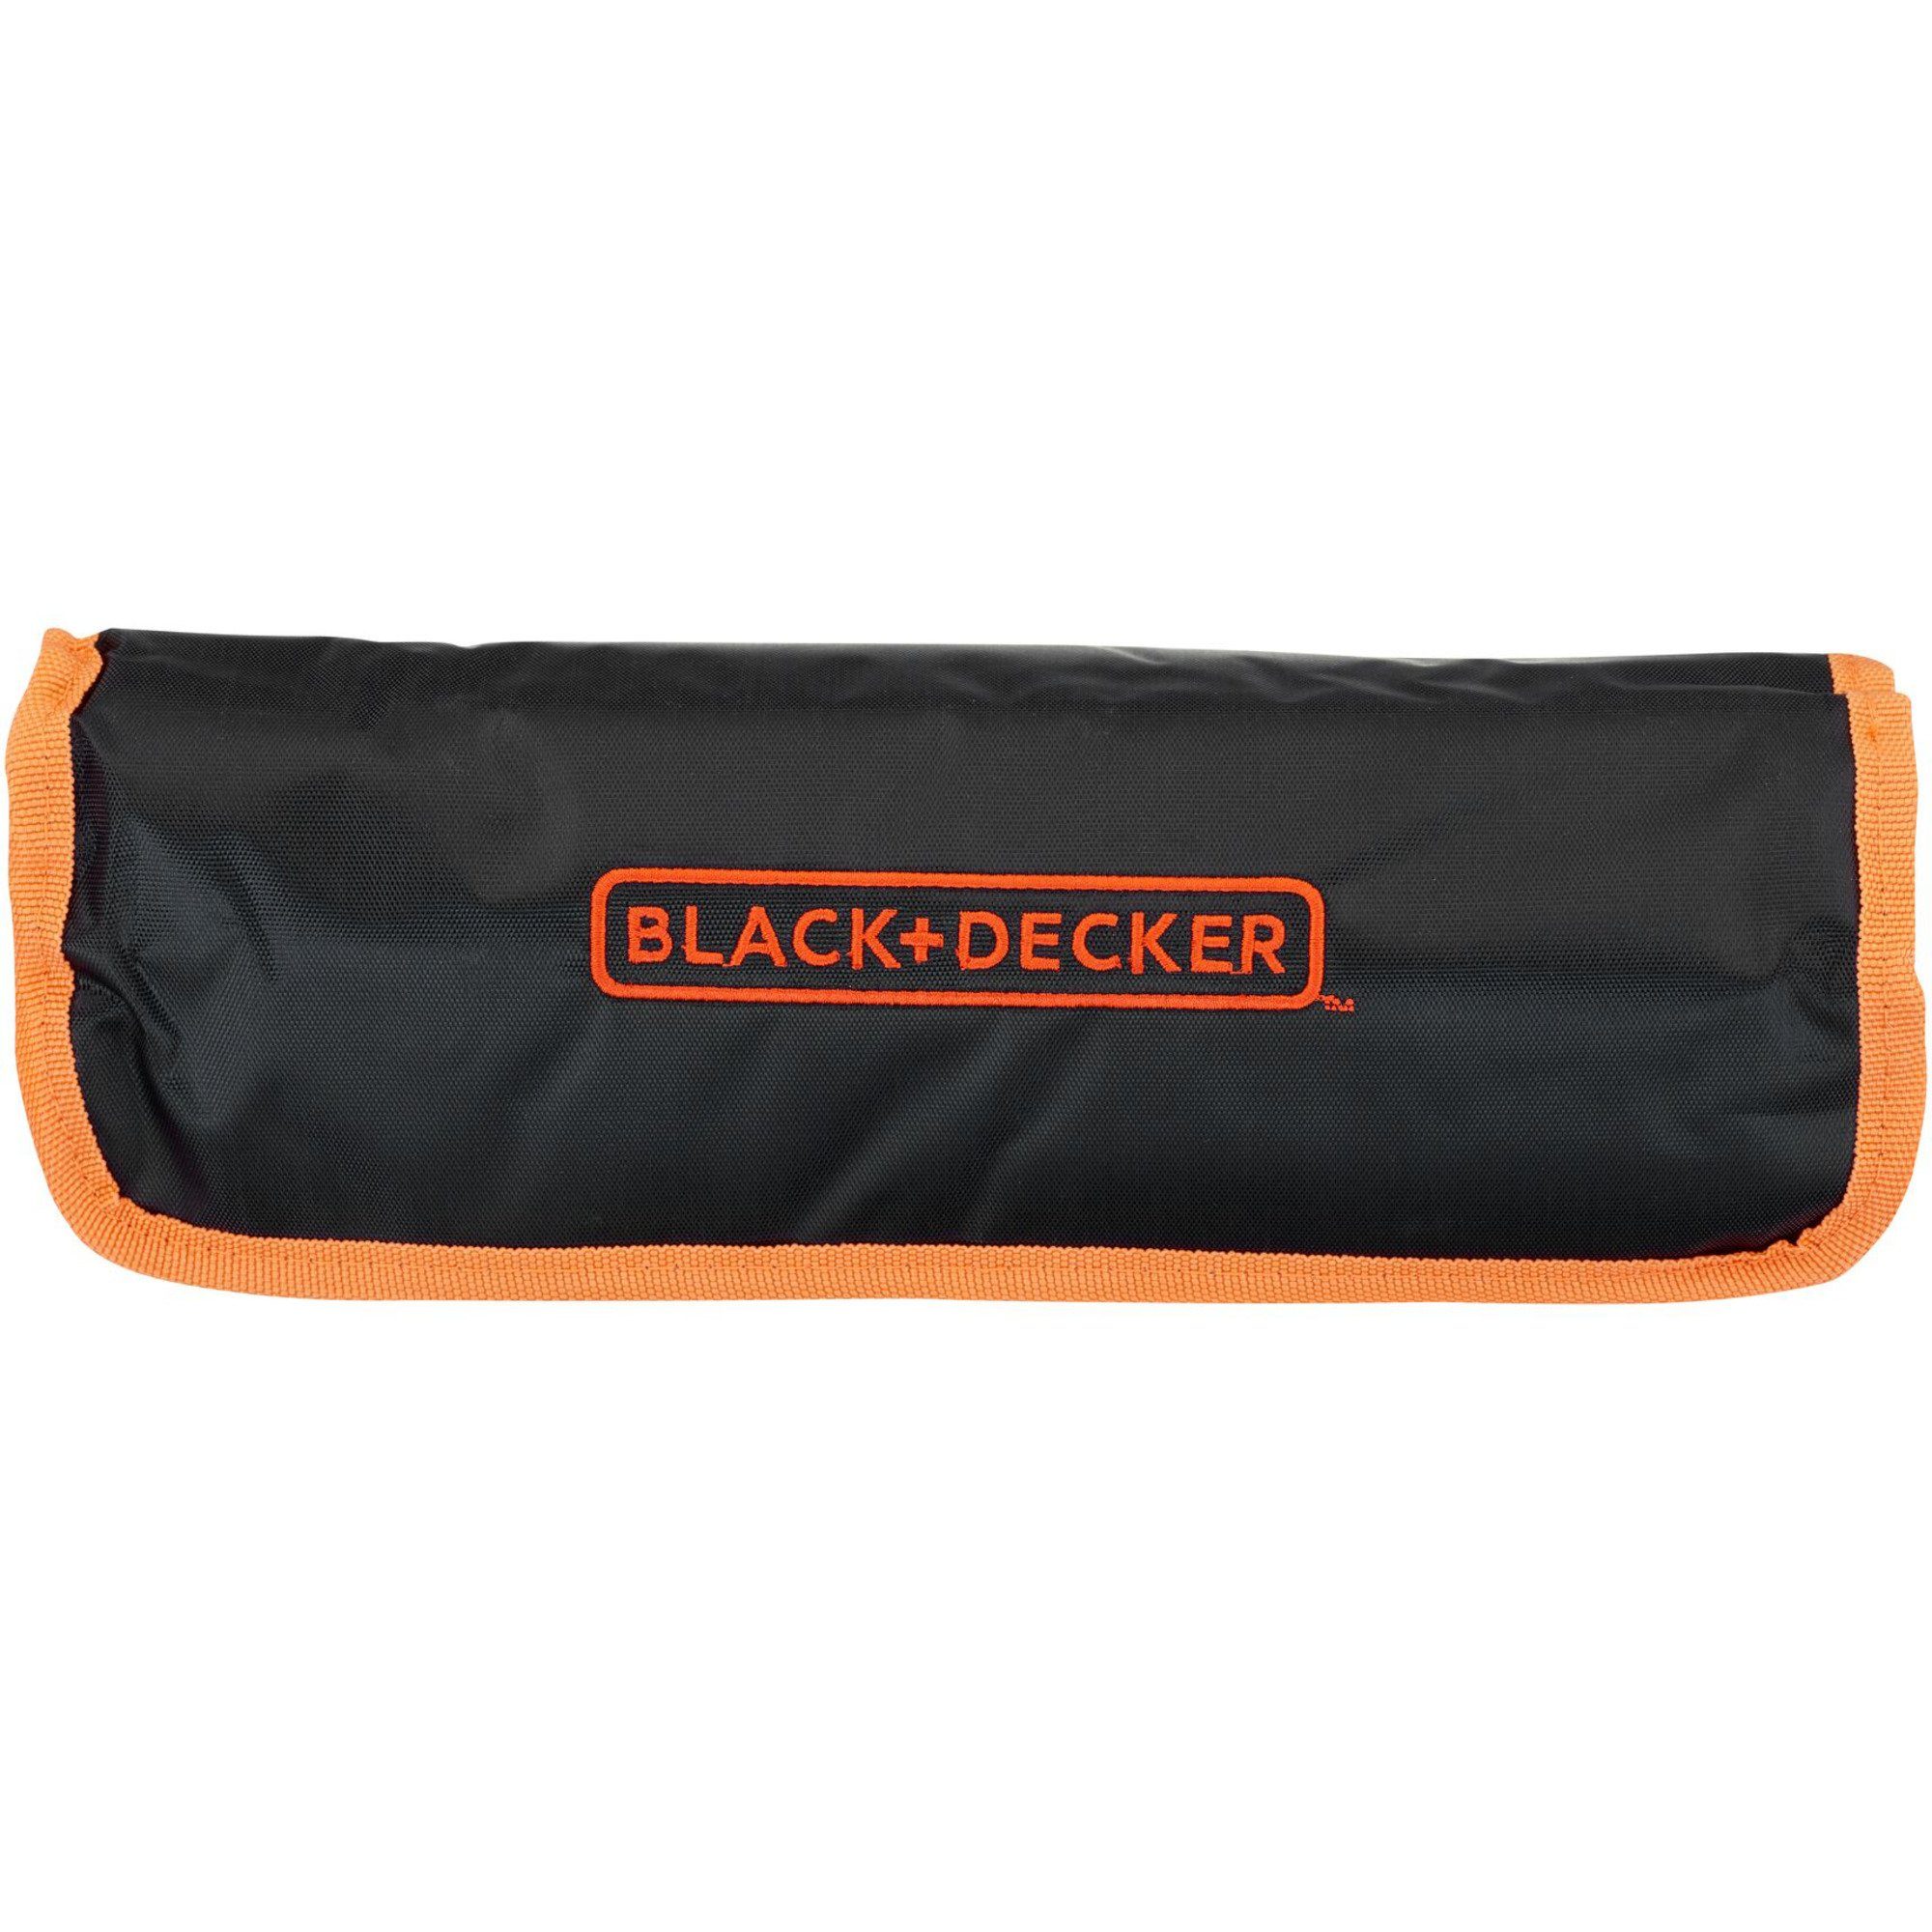 Black Werkzeugset Black & BLACK+DECKER + Decker mit Decker Mechaniker-Set Rolltasche